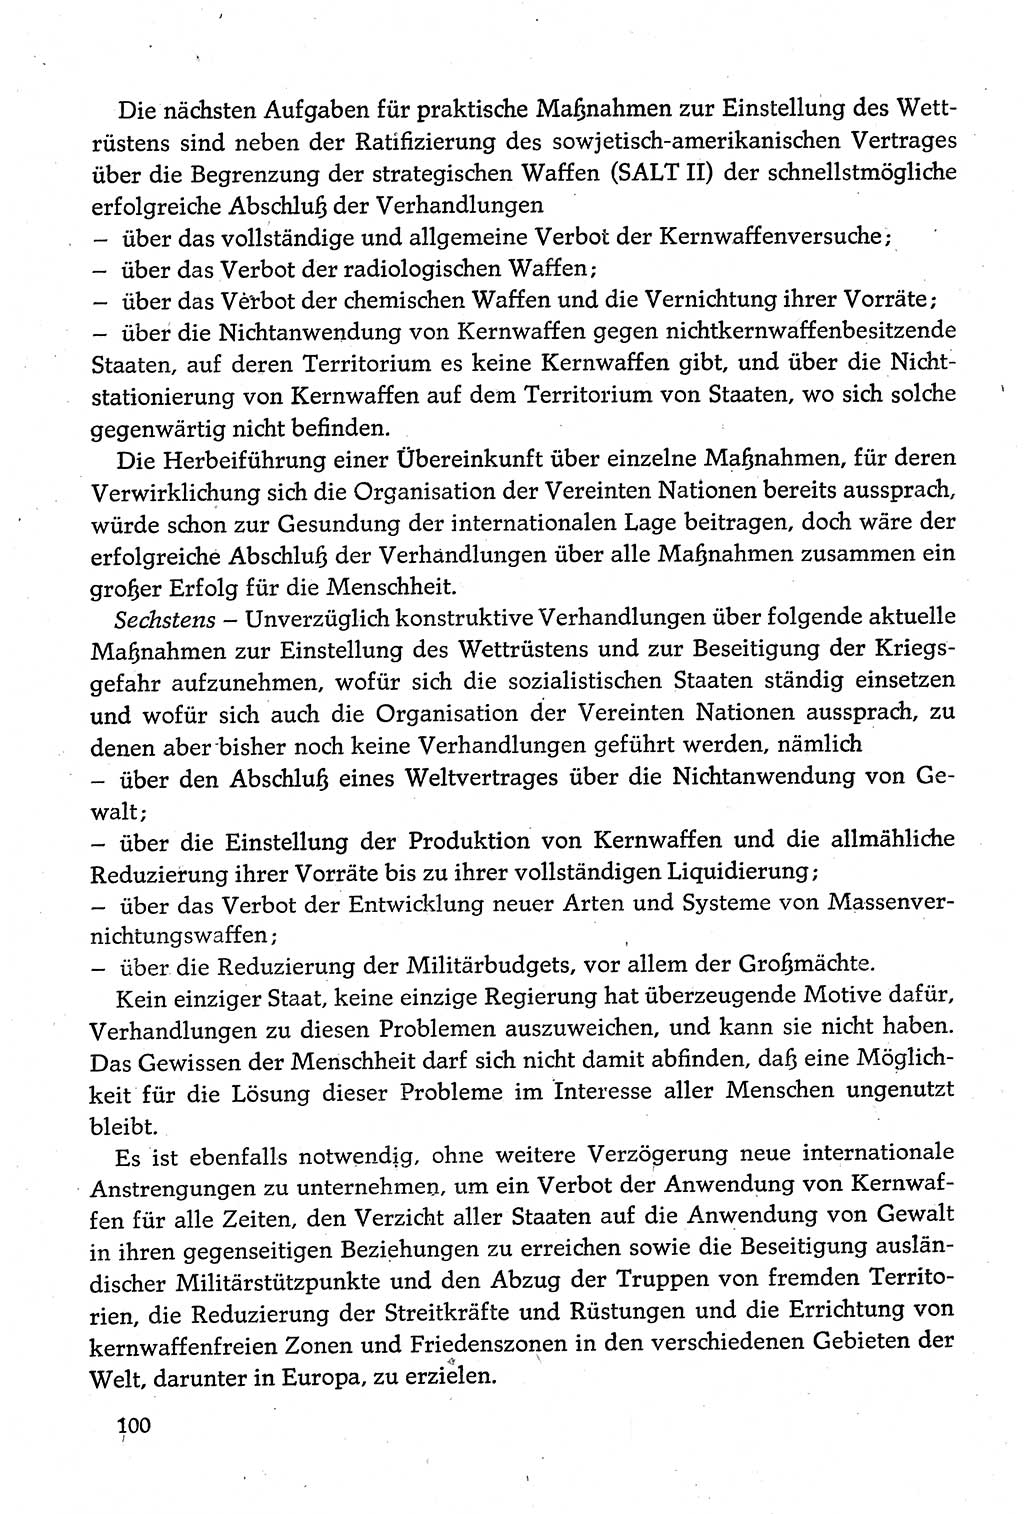 Dokumente der Sozialistischen Einheitspartei Deutschlands (SED) [Deutsche Demokratische Republik (DDR)] 1980-1981, Seite 100 (Dok. SED DDR 1980-1981, S. 100)